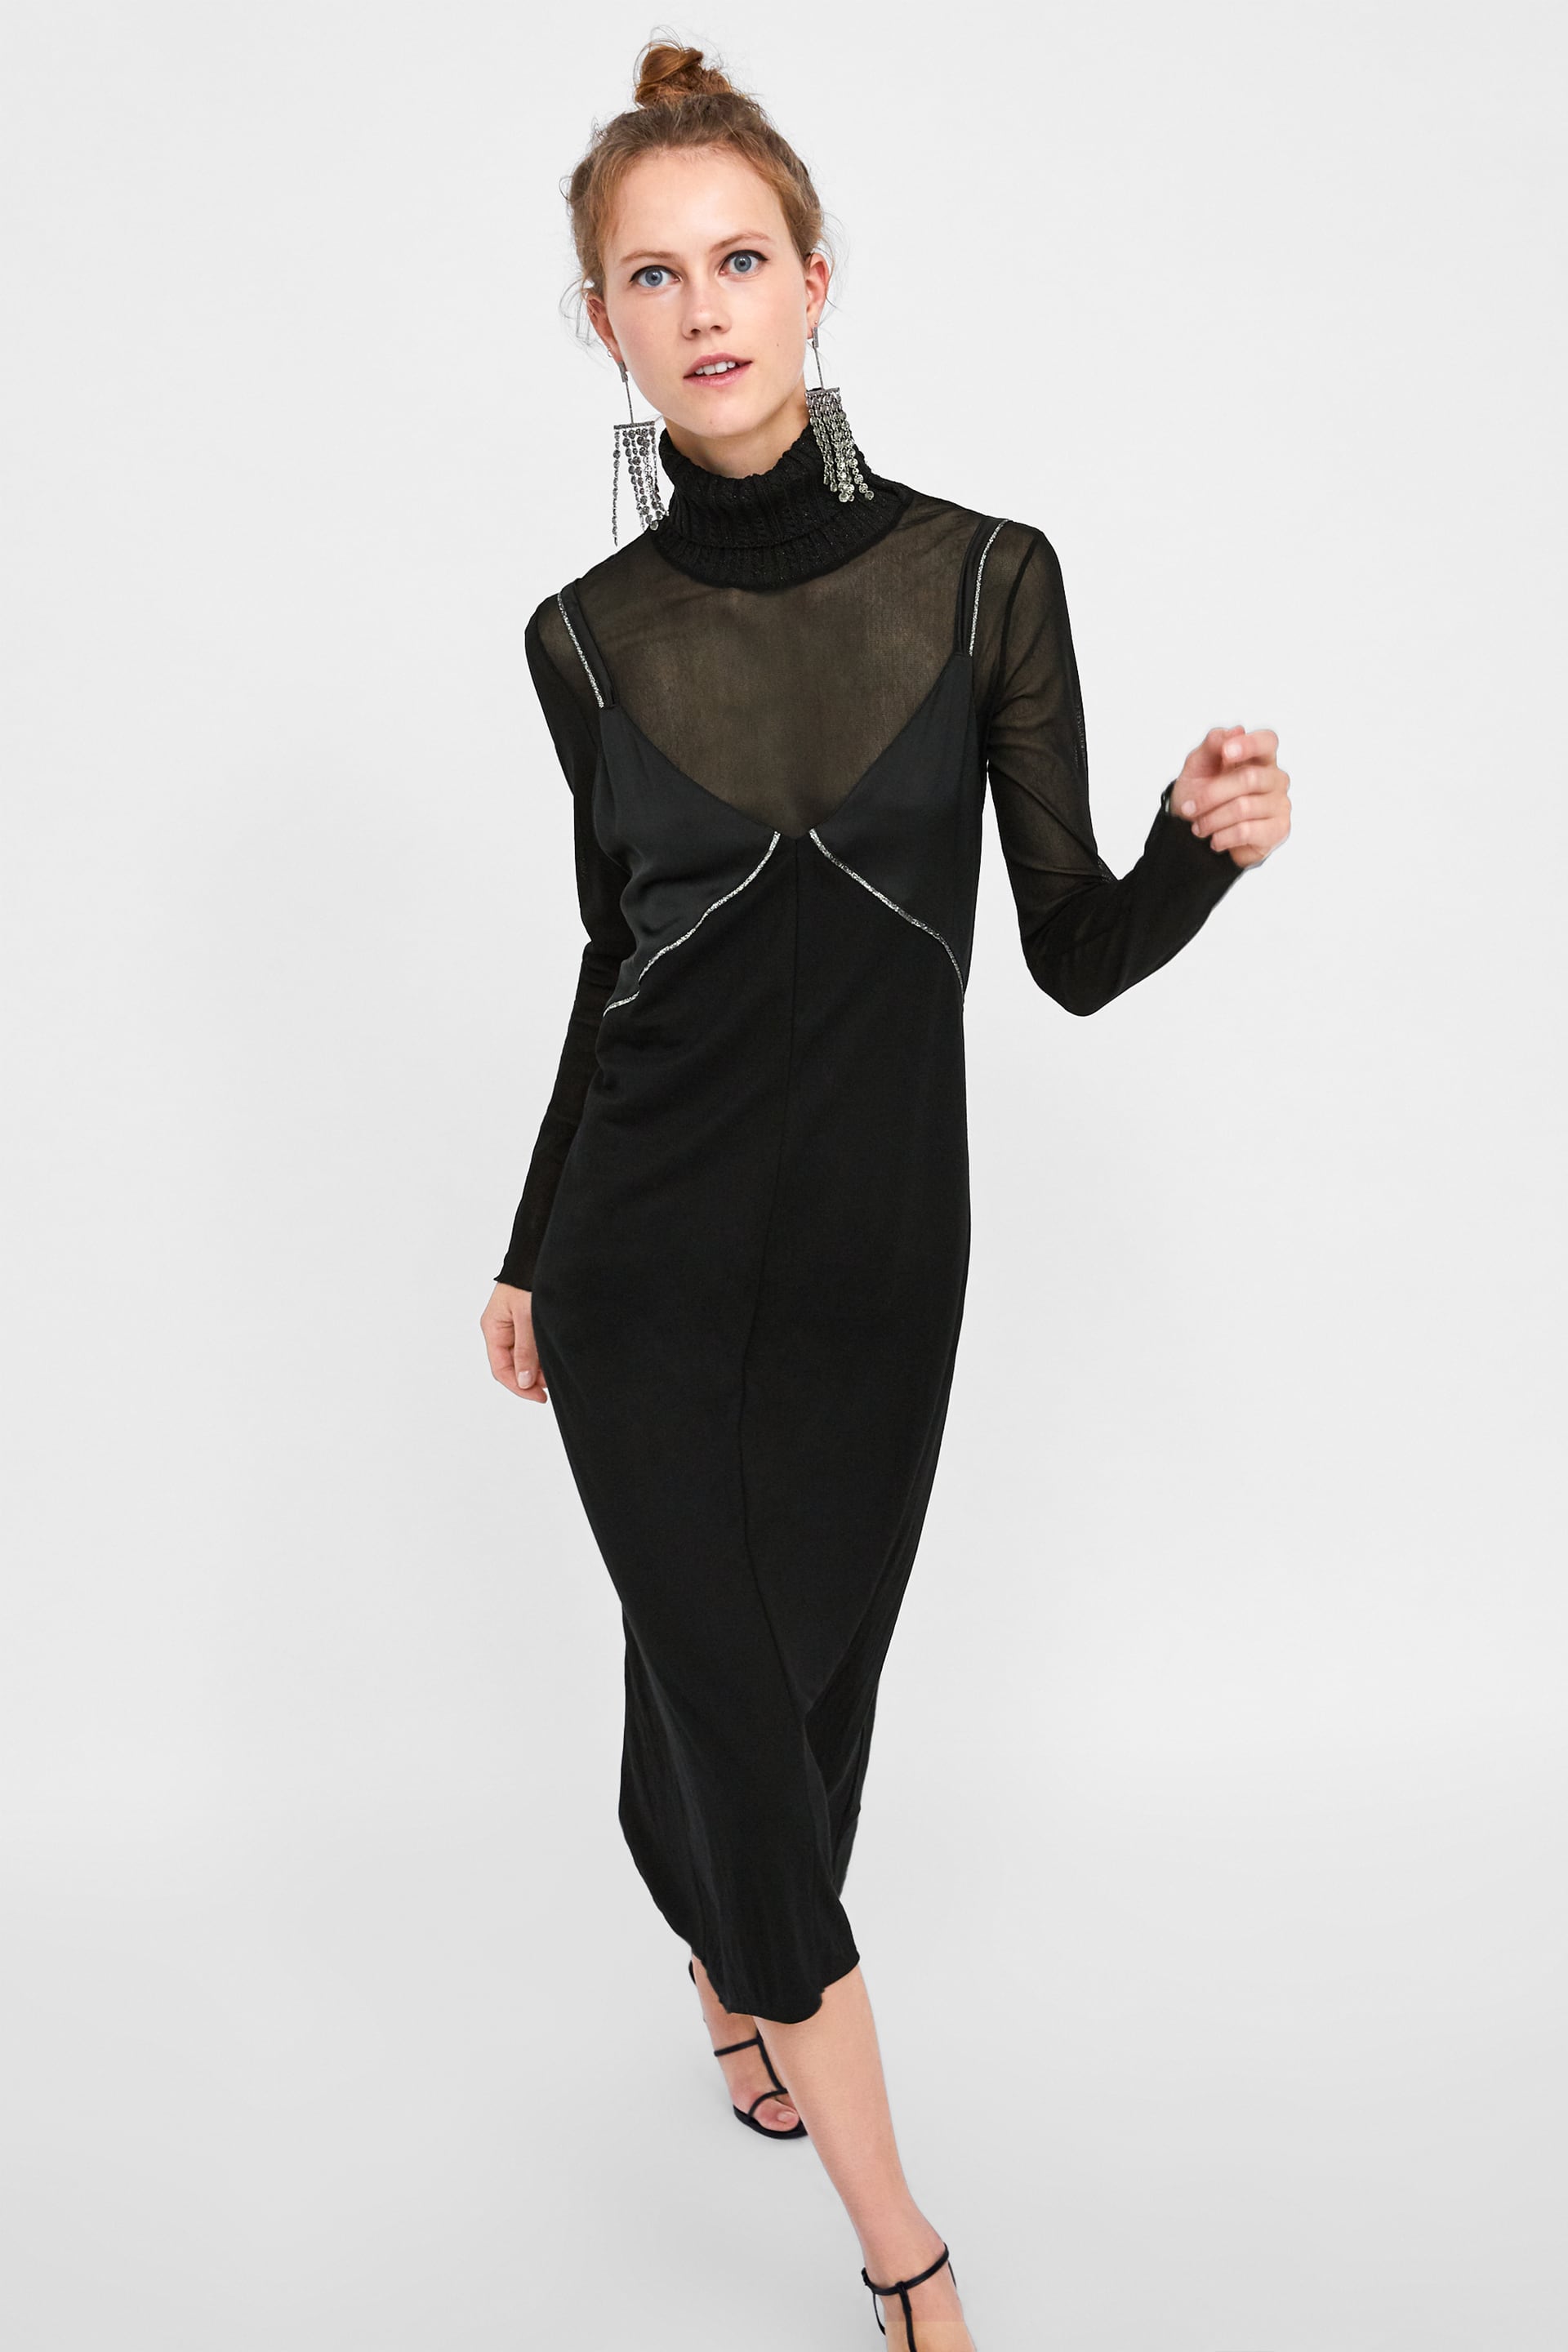 zara black dress 2018